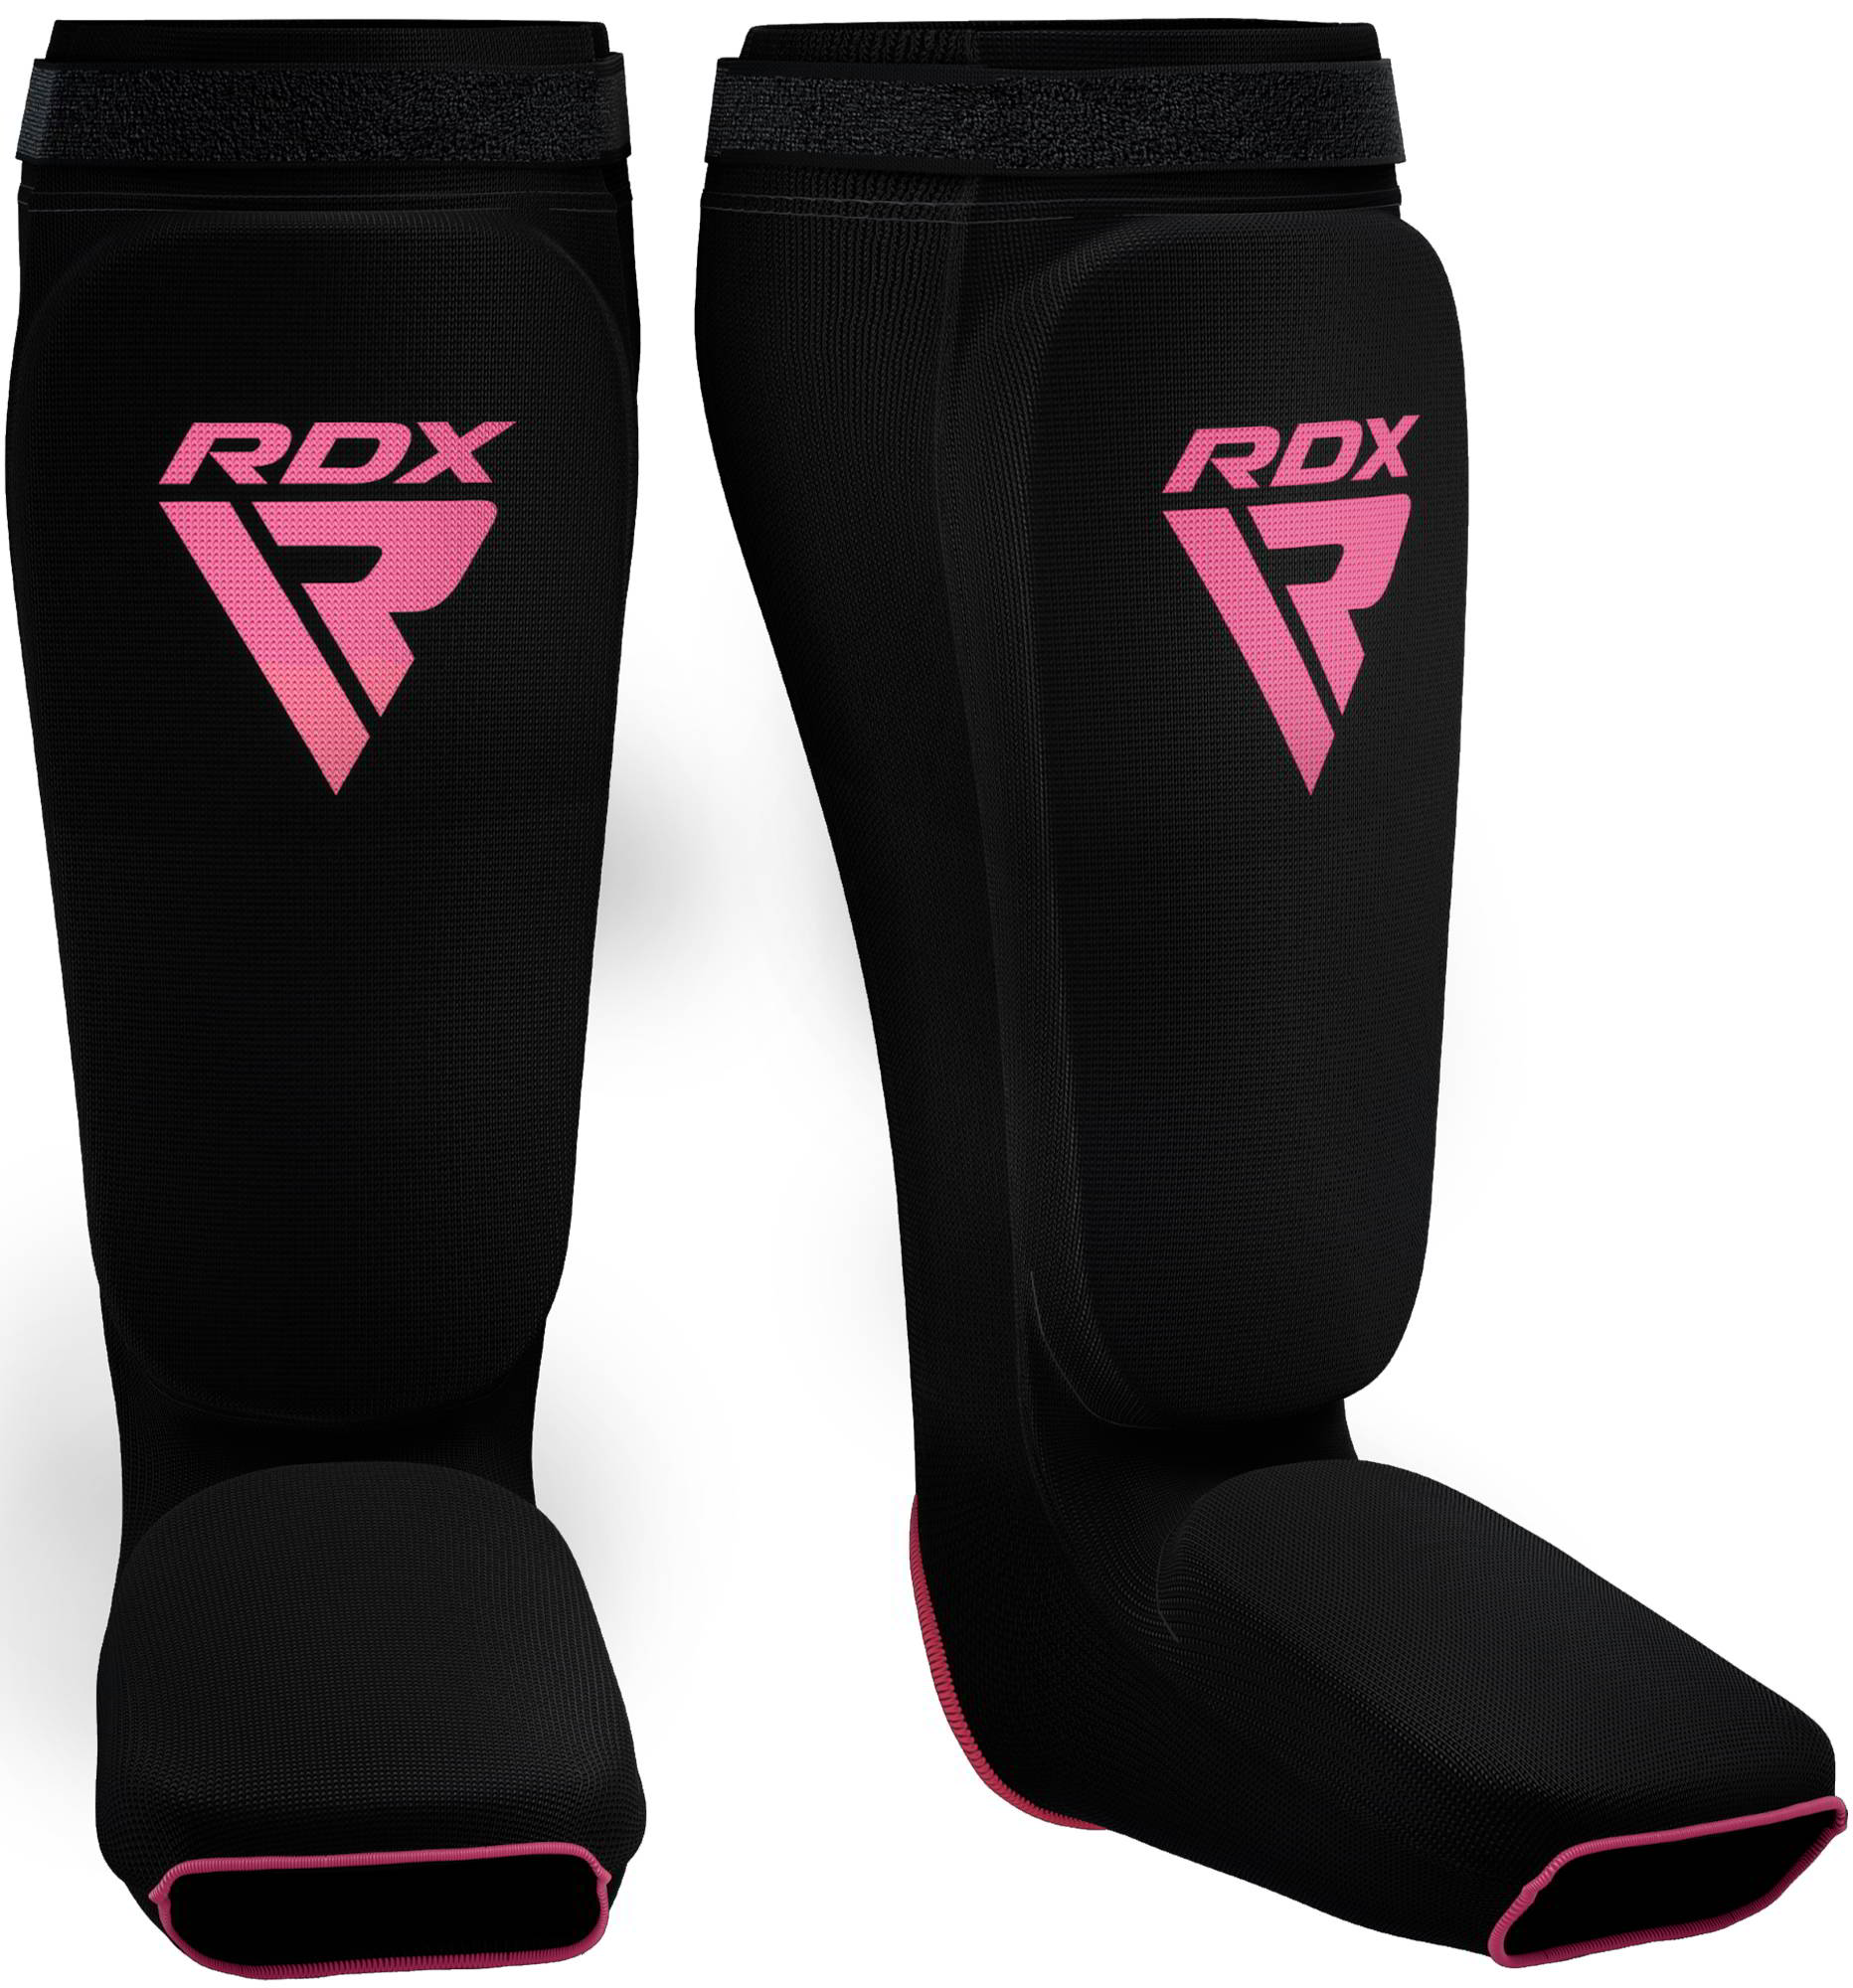 RDX SIB Shin Instep Guard OEKO-TEX® Standard 100 Certified Pink M